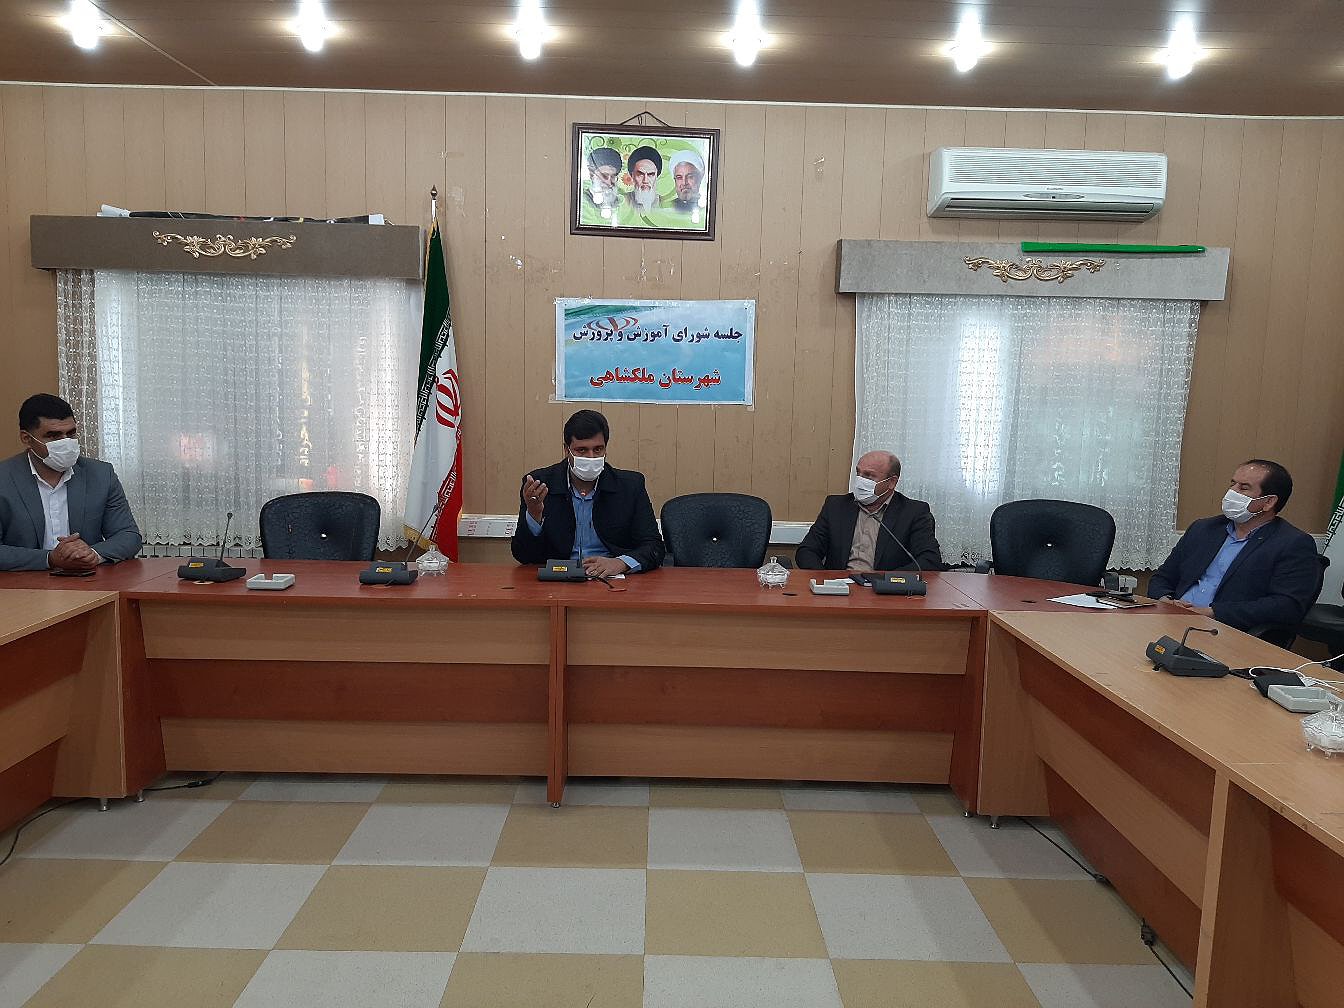 جلسه شورای آموزش و پرورش شهرستان ملکشاهی برگزار شد.